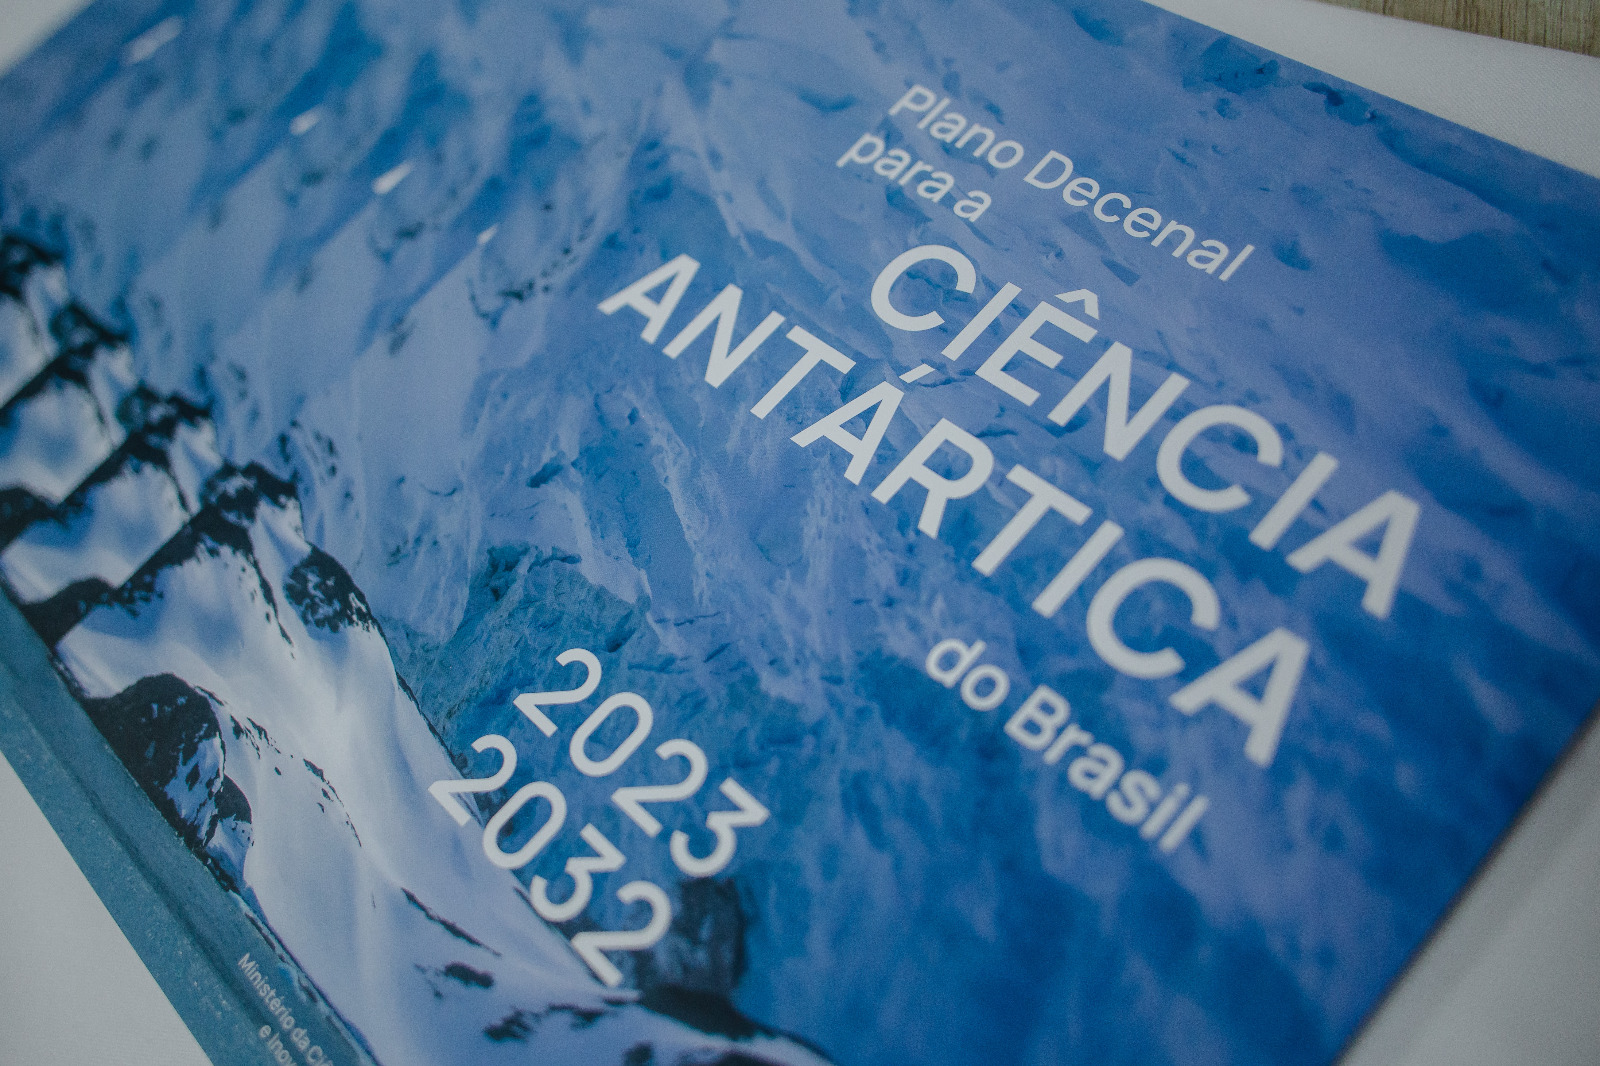 Plano foi elaborado pelo MCTI, por meio do Comitê Nacional de Pesquisas Antárticas (Conapa), com ampla participação da comunidade científica